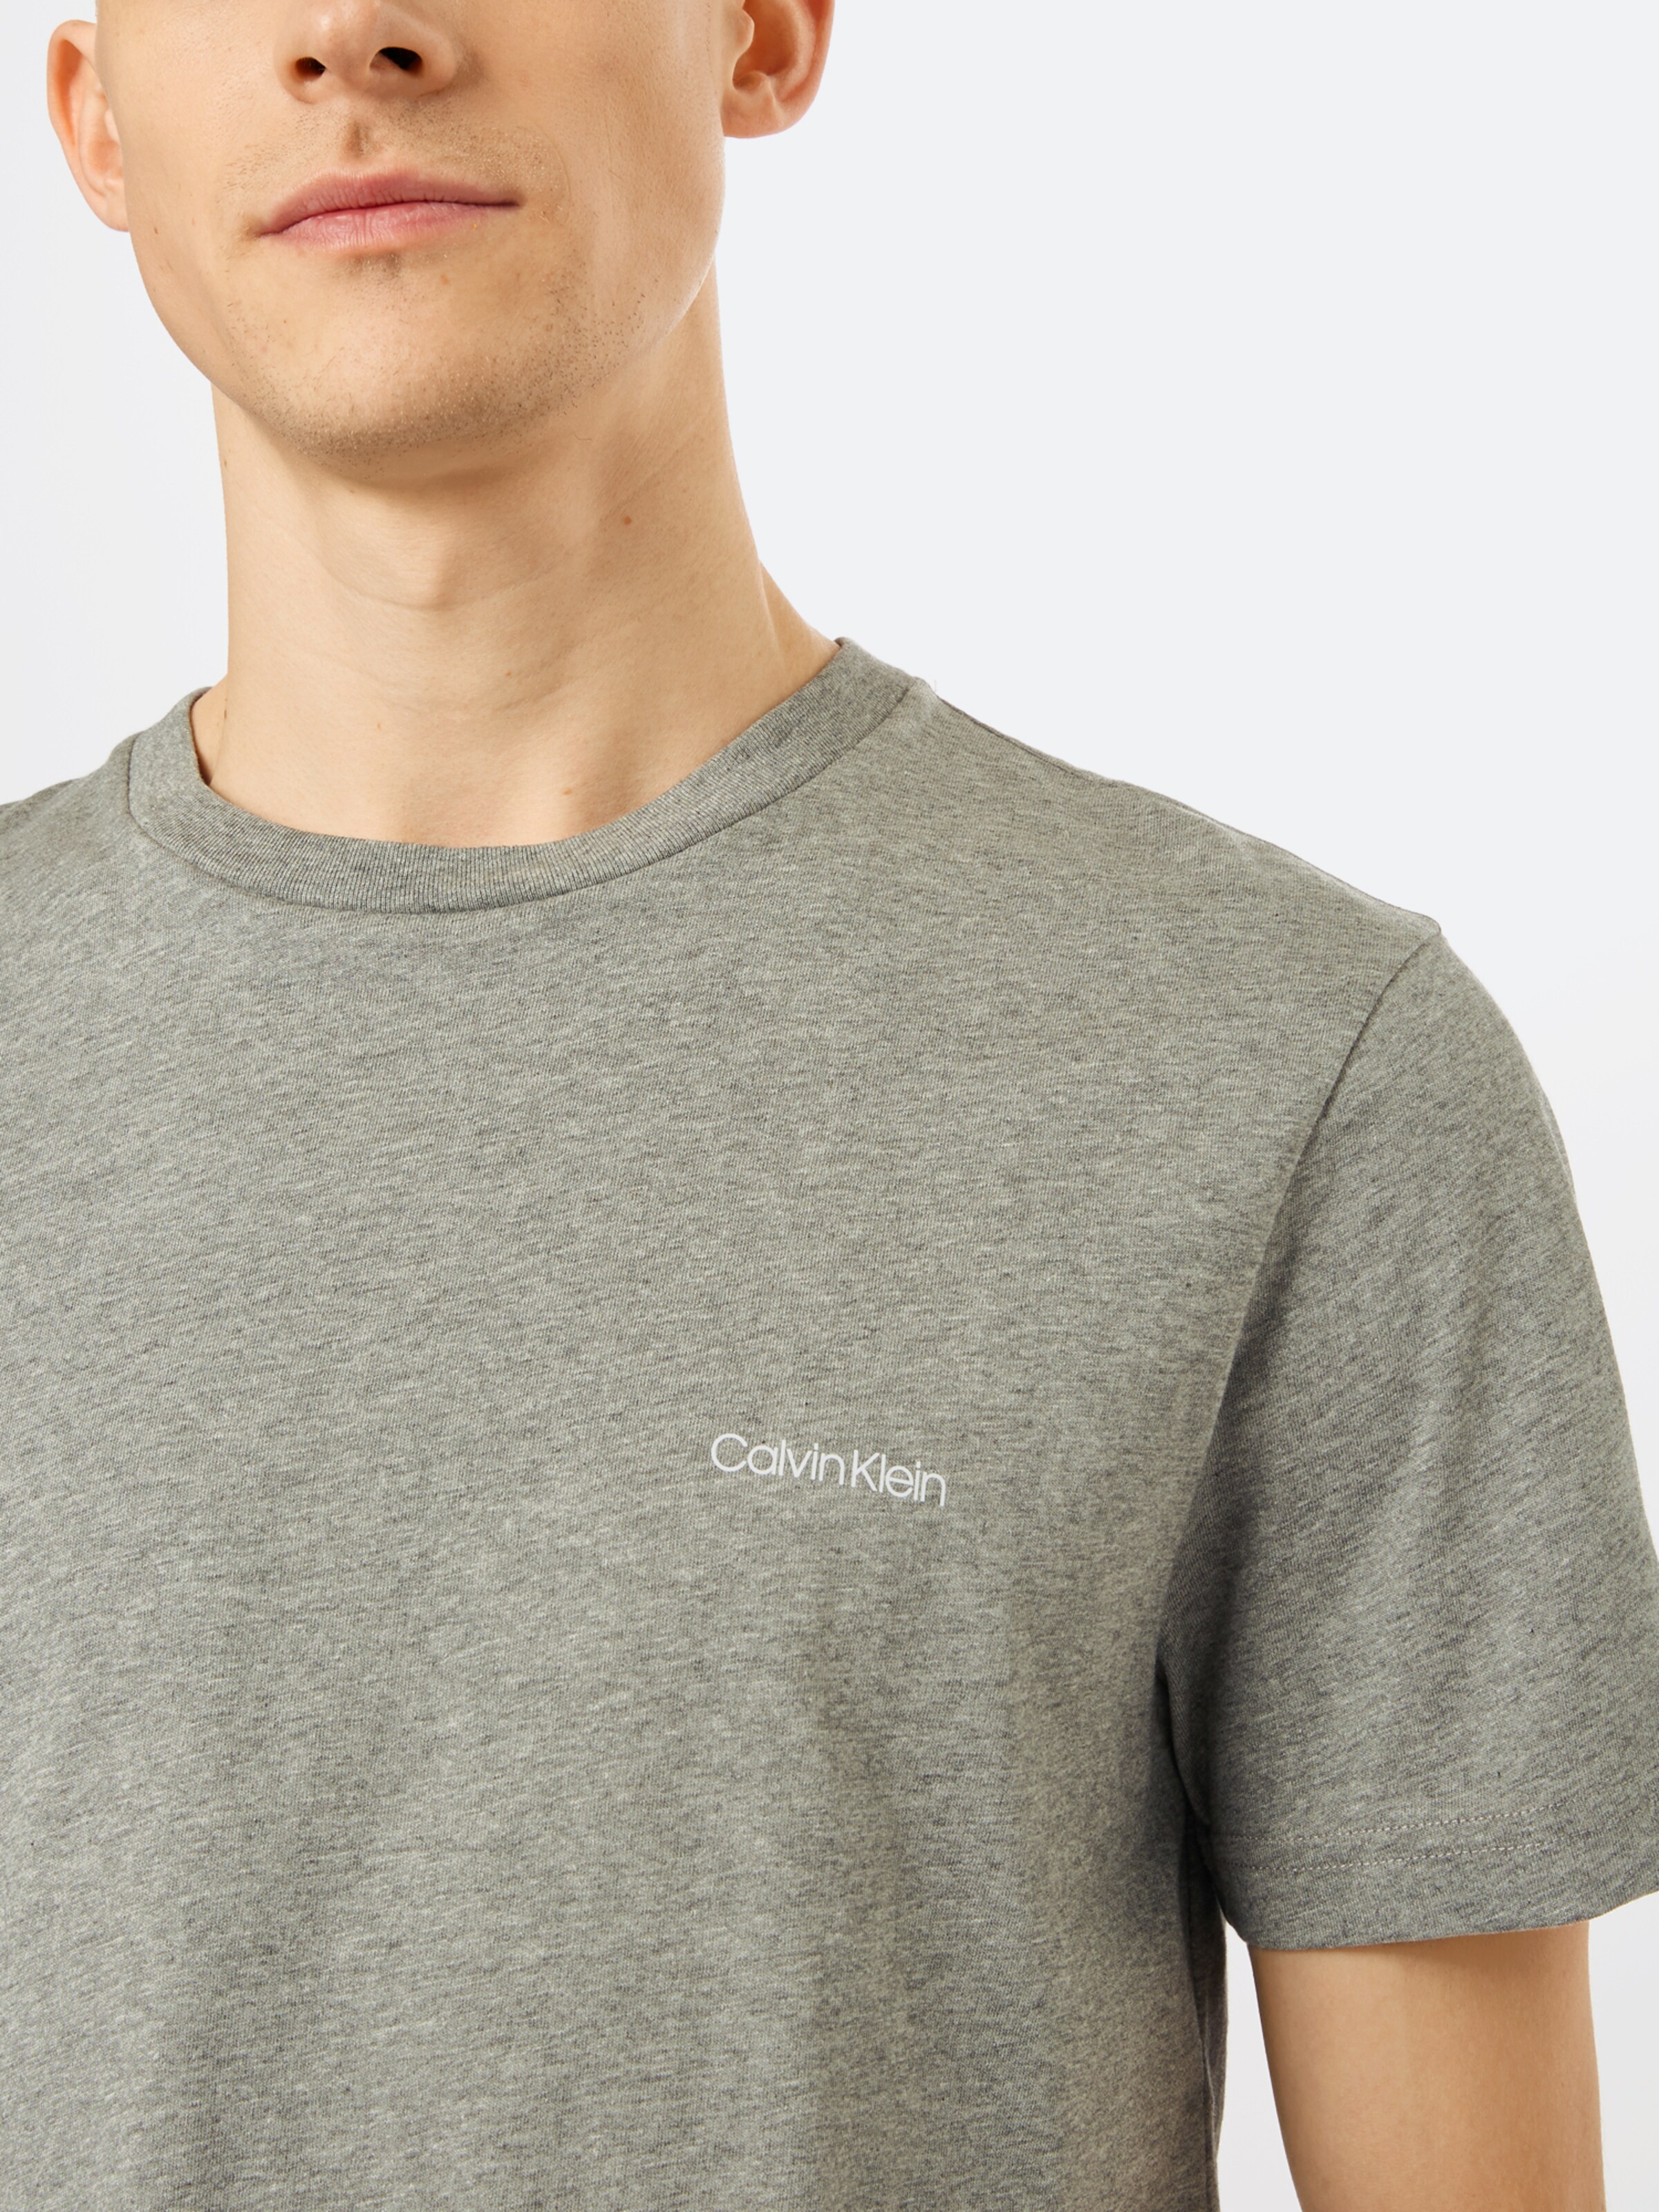 Premium T-Shirt Calvin Klein en Gris Fumé, Gris Chiné 